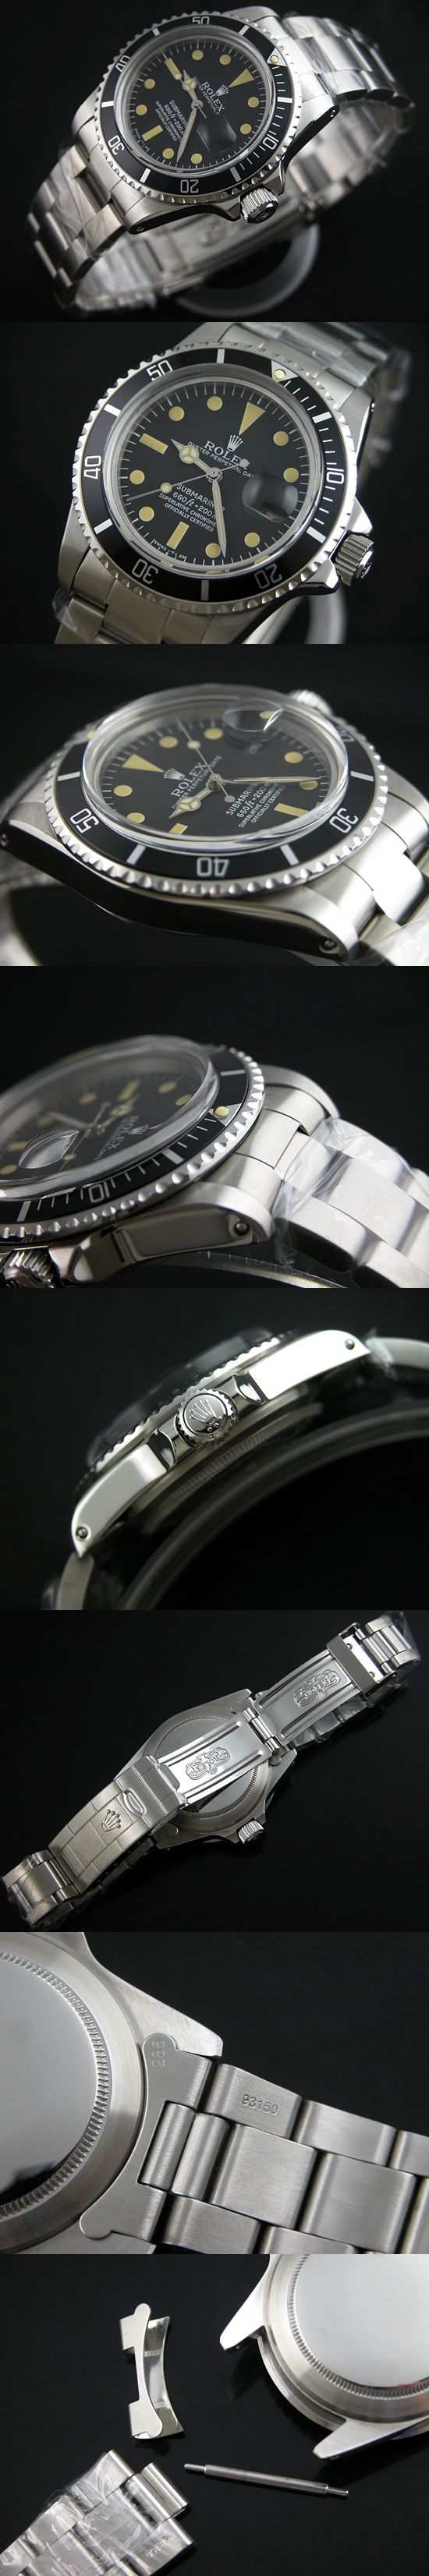 おしゃれなブランド時計がロレックス-サブマリーナ-ROLEX-ROL00483S-男性用を提供します.